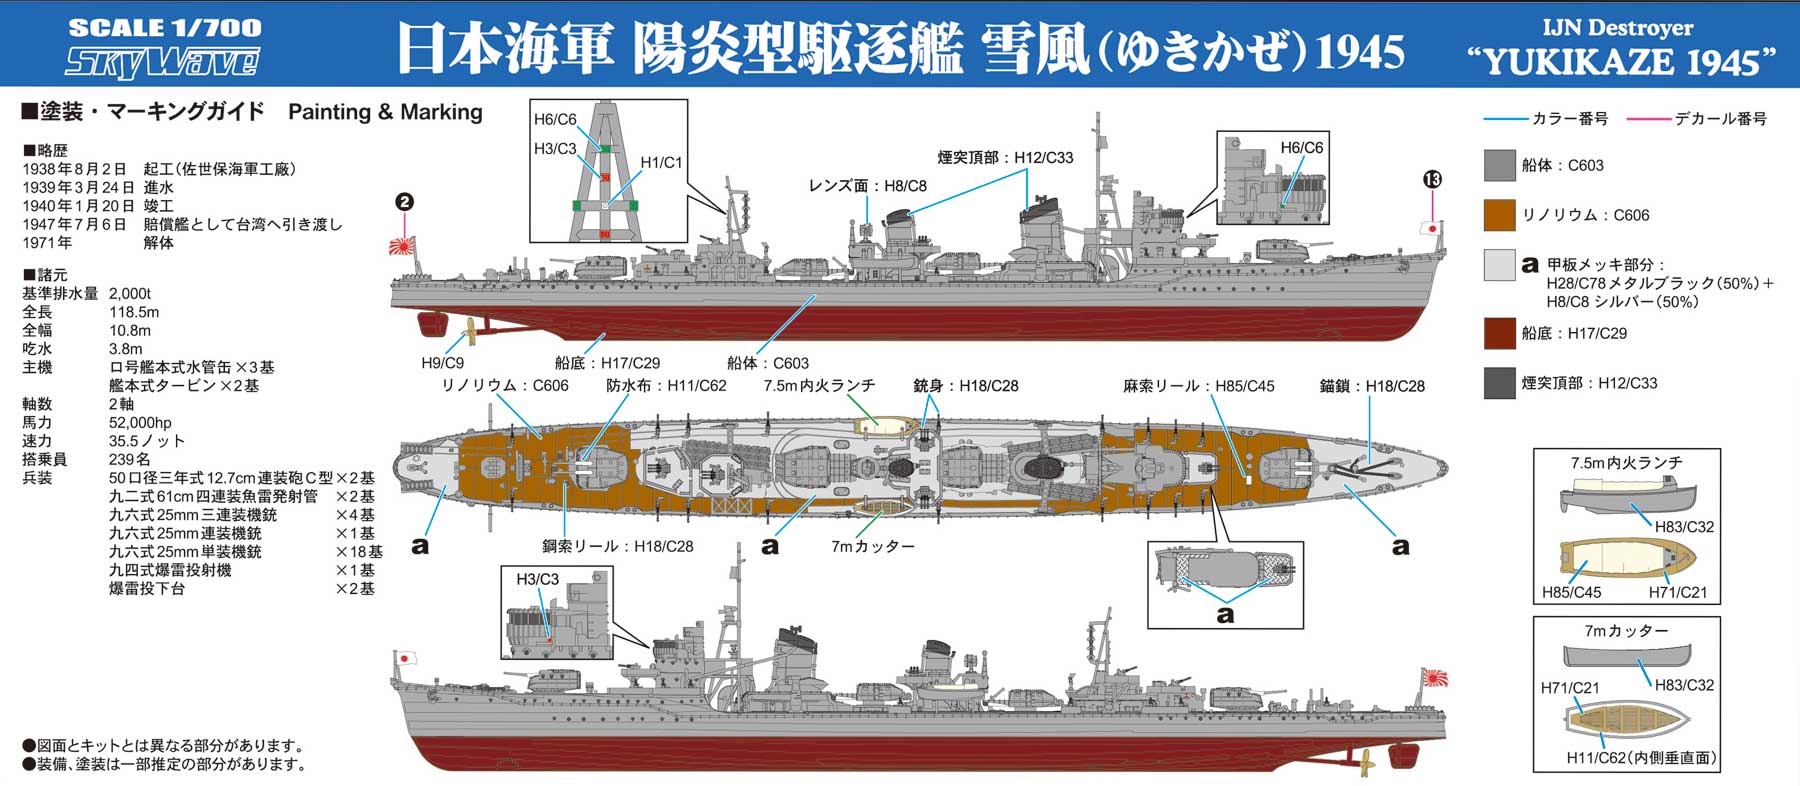 ピットロード W232 1/700 スカイウェーブシリーズ 日本海軍 駆逐艦 雪